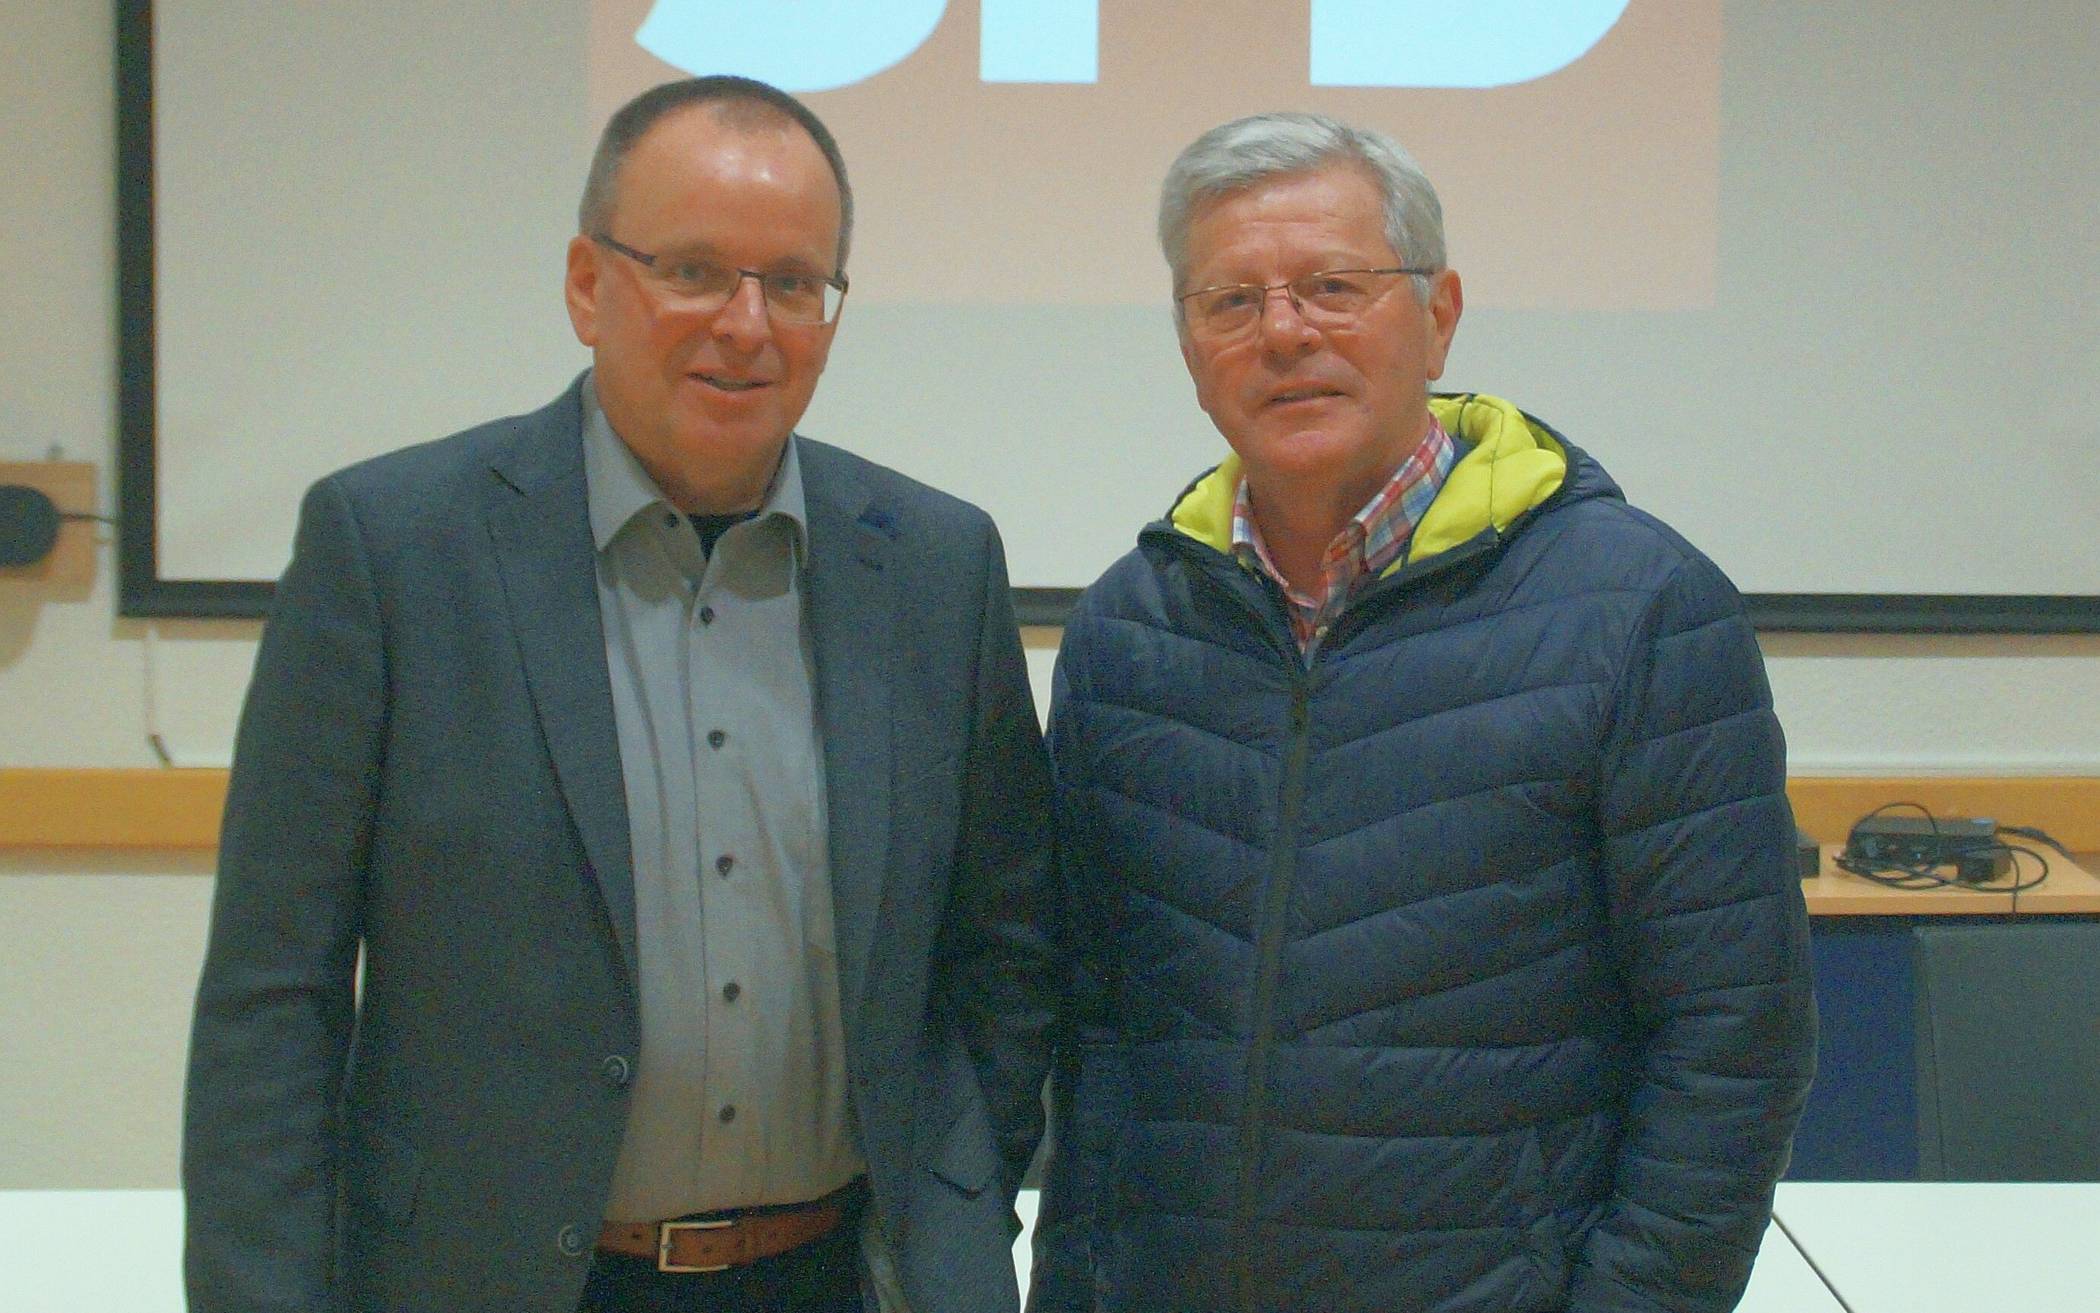  Der neue Fraktionsvorsitzende der Jüchener SPD, Norbert John (links), und sein Vorgänger Hans-Josef Schneider, der nun als 1. Stellvertreter fungiert.  